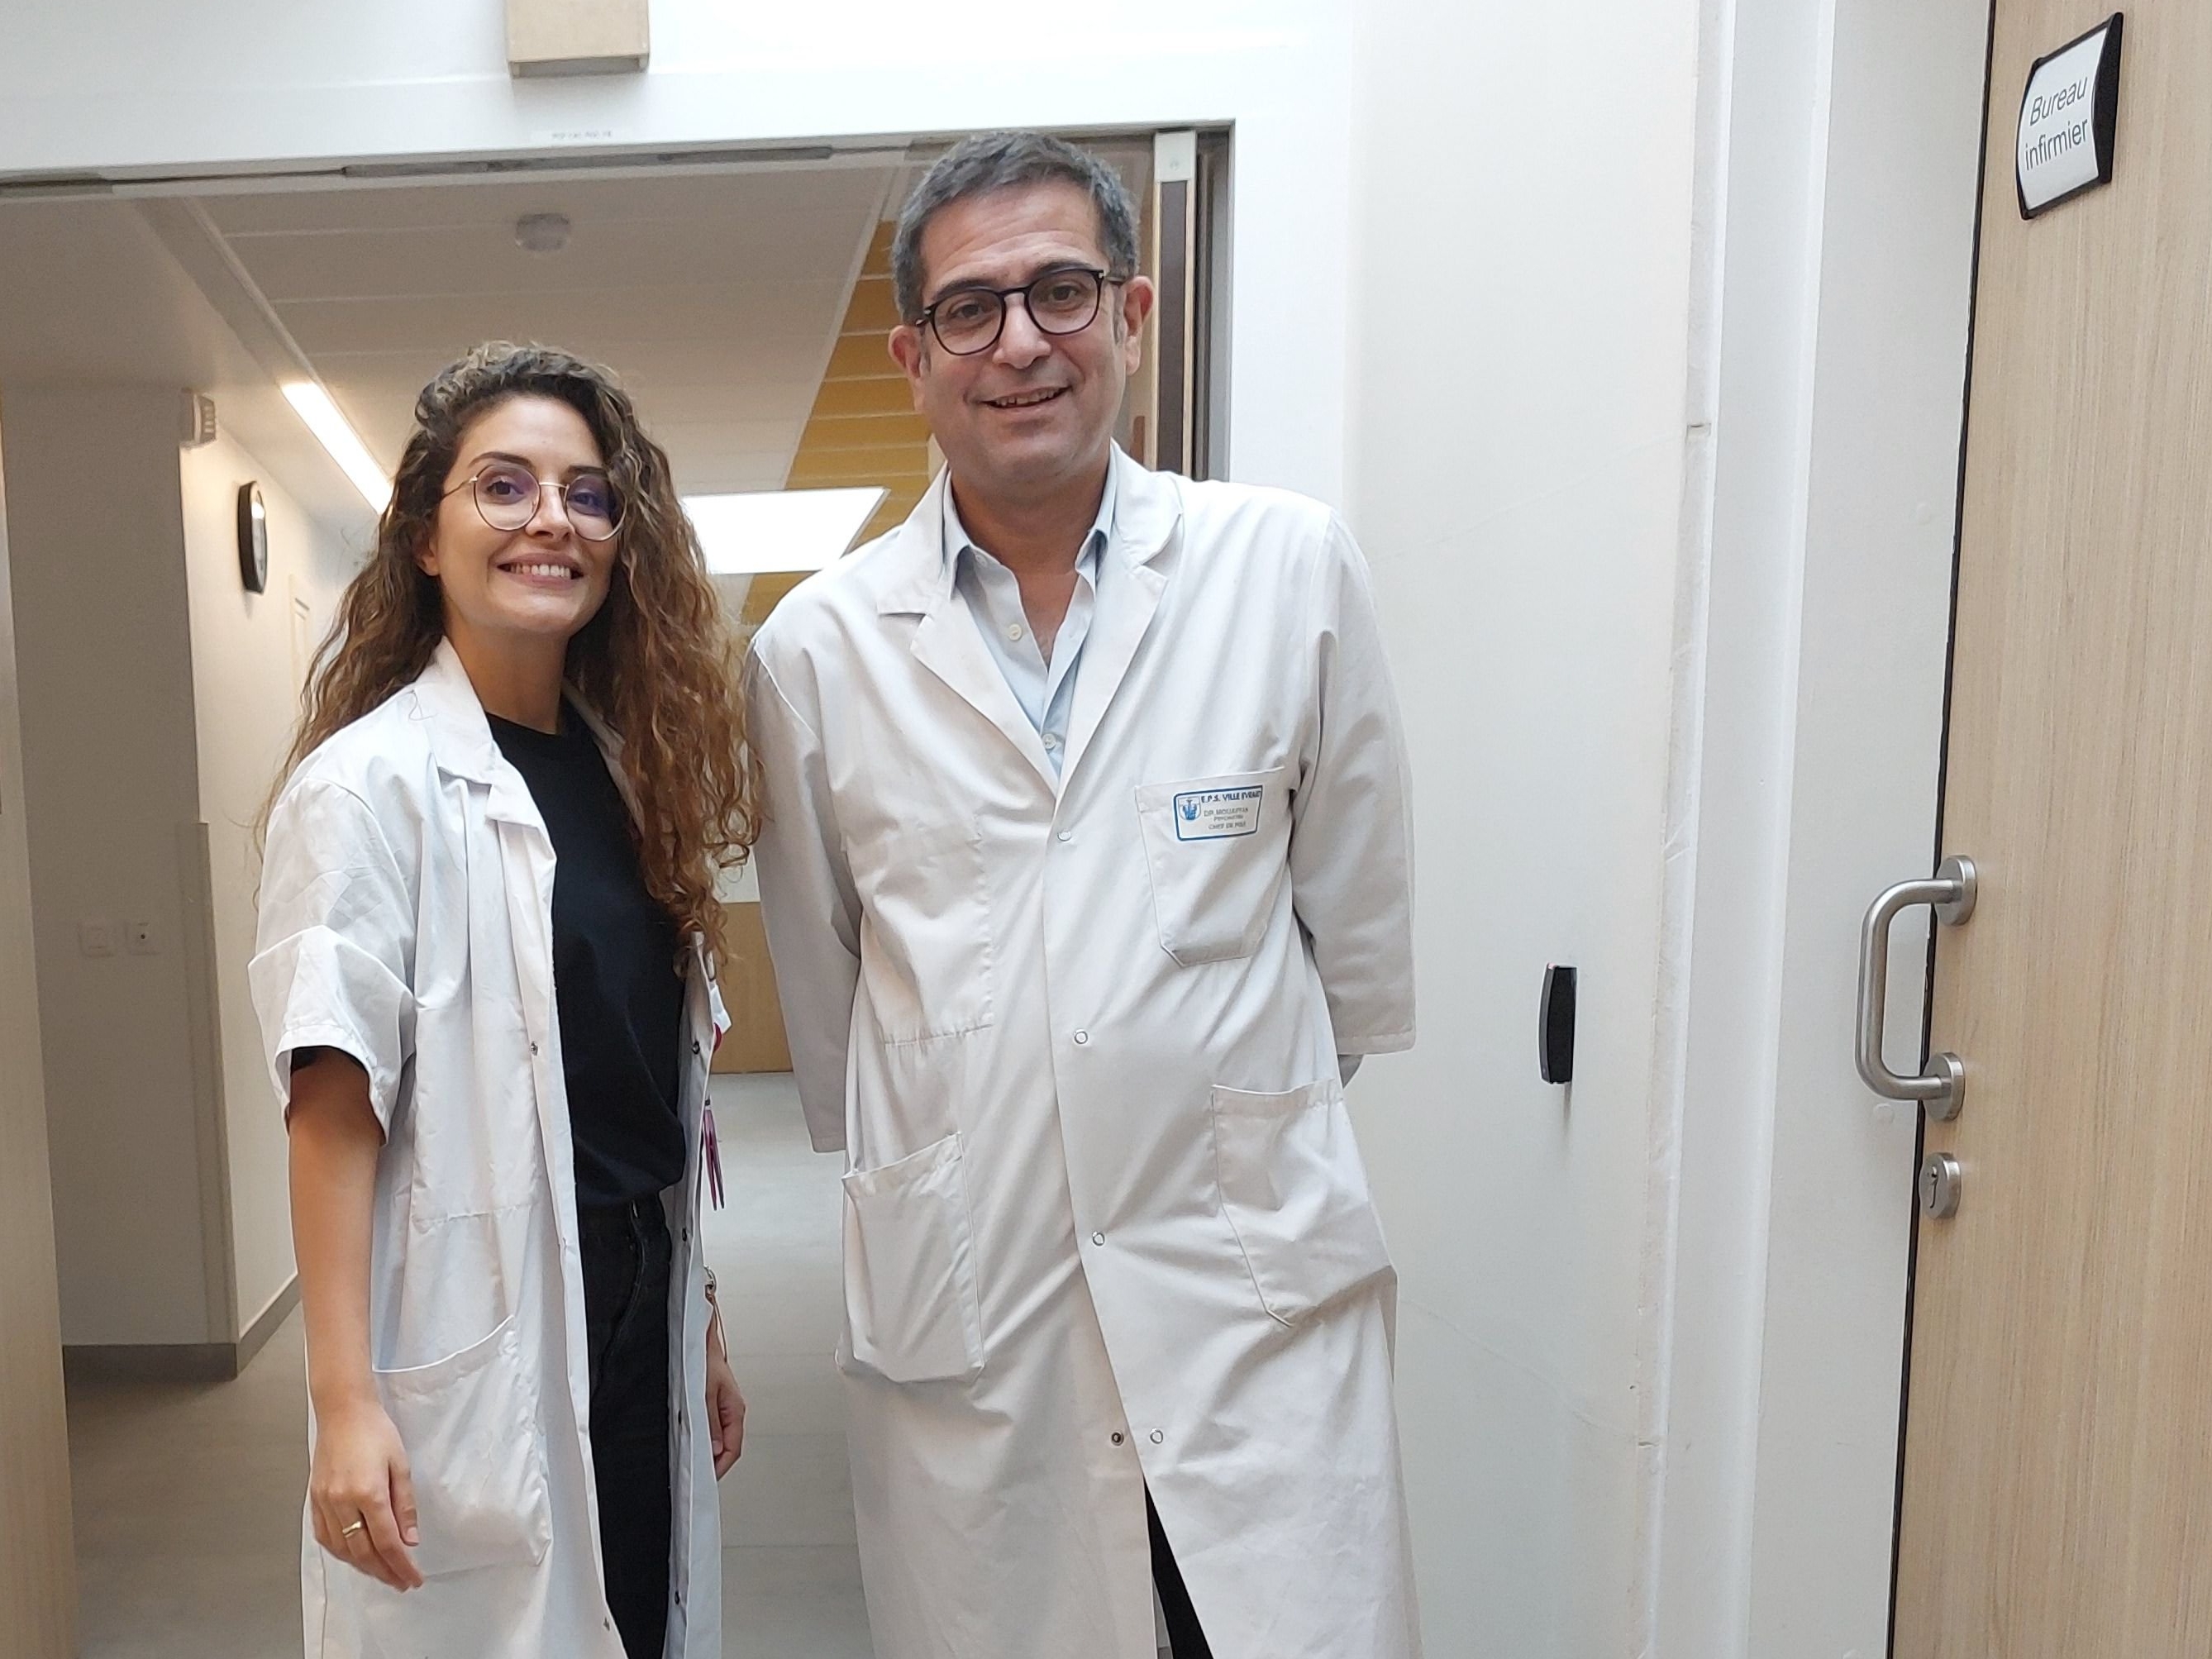 La Dr. Nadia Cheffi est responsable de la nouvelle unité d'urgences psychiatriques situé dans l'hôpital Delafontaine de Saint-Denis (Seine-Saint-Denis), initiée par le Dr. Fayçal Mouaffak, psychiatre. LP/E.M.